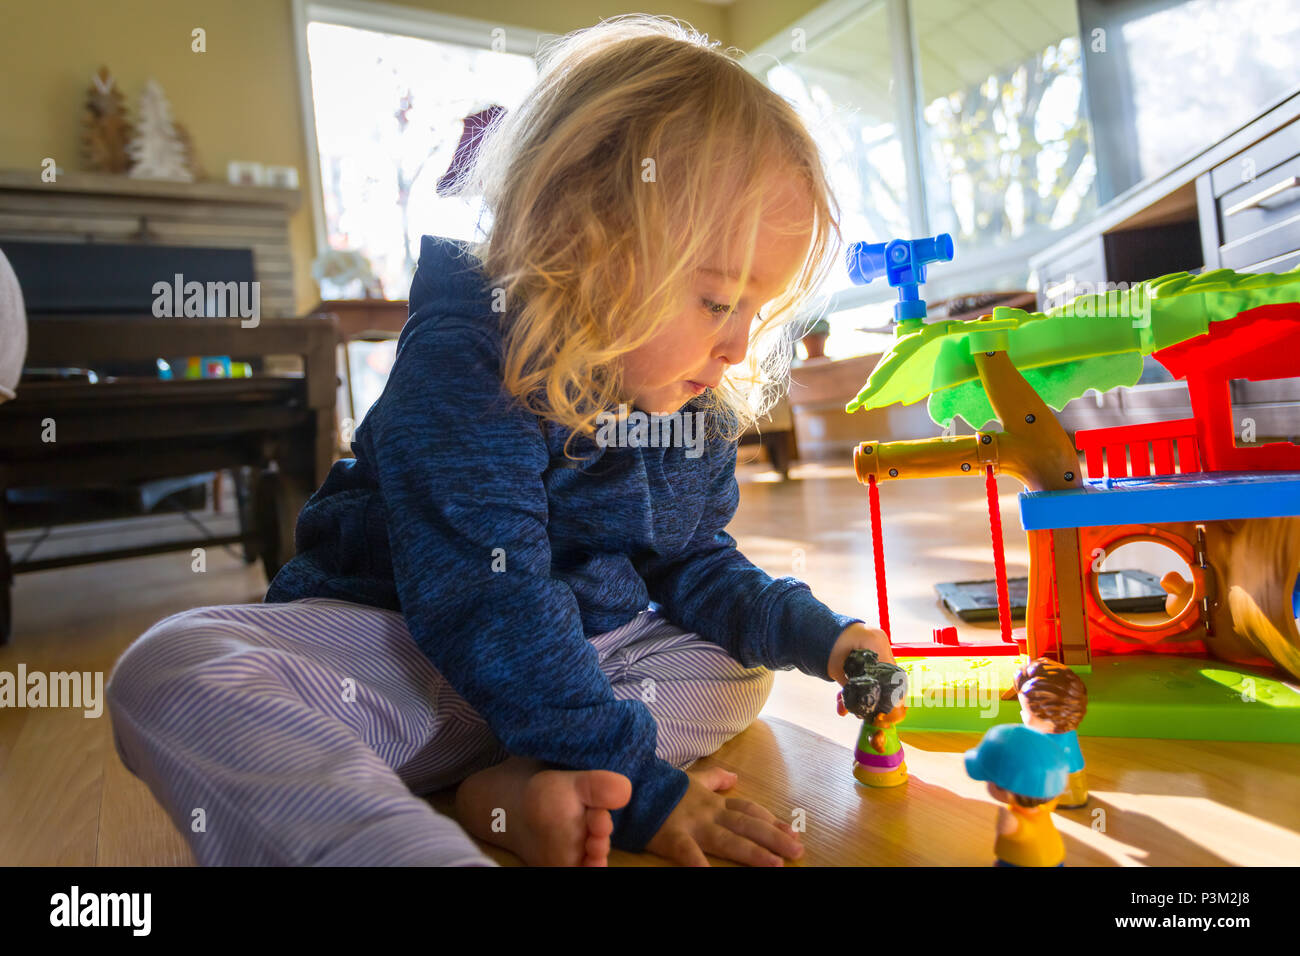 2 ans, fille, jouant avec des poupées Banque D'Images